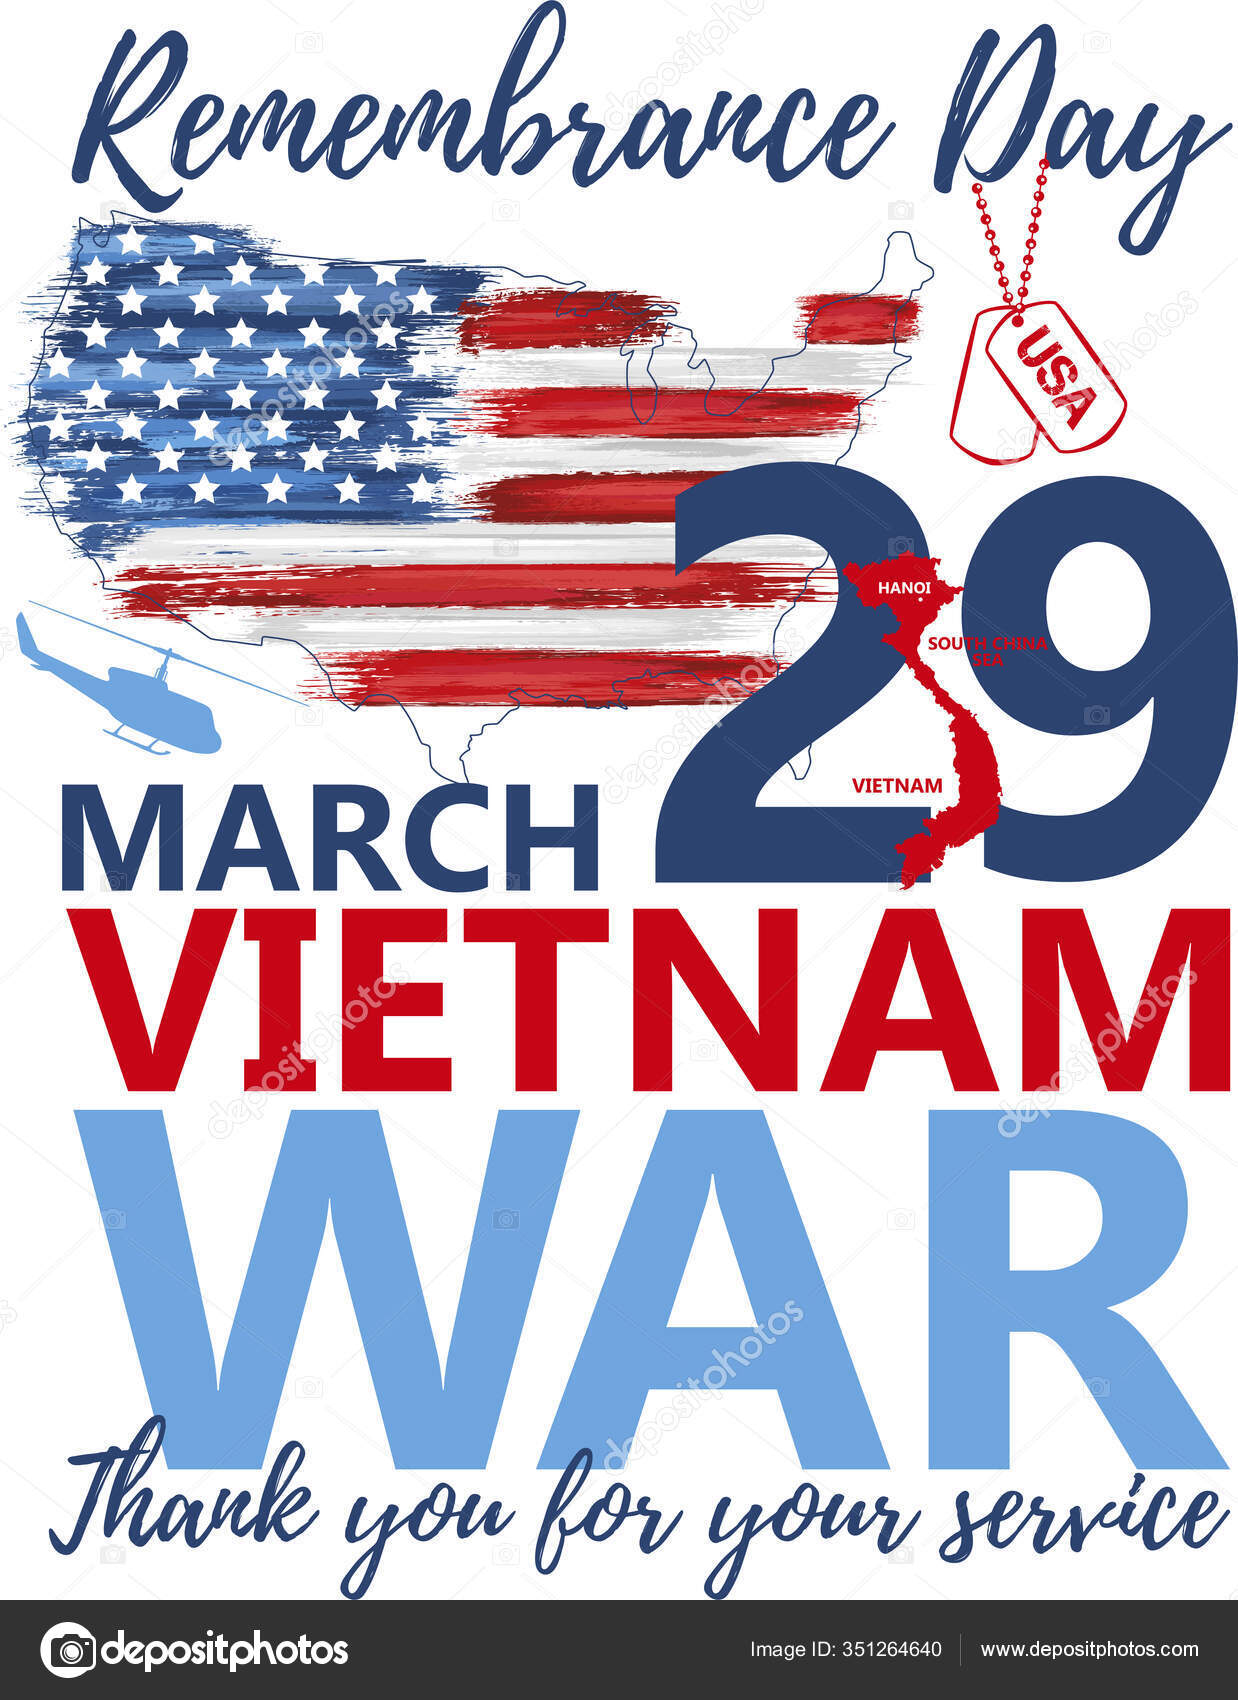 NATIONAL VIETNAM WAR VETERANS DAY 2023 | Poster